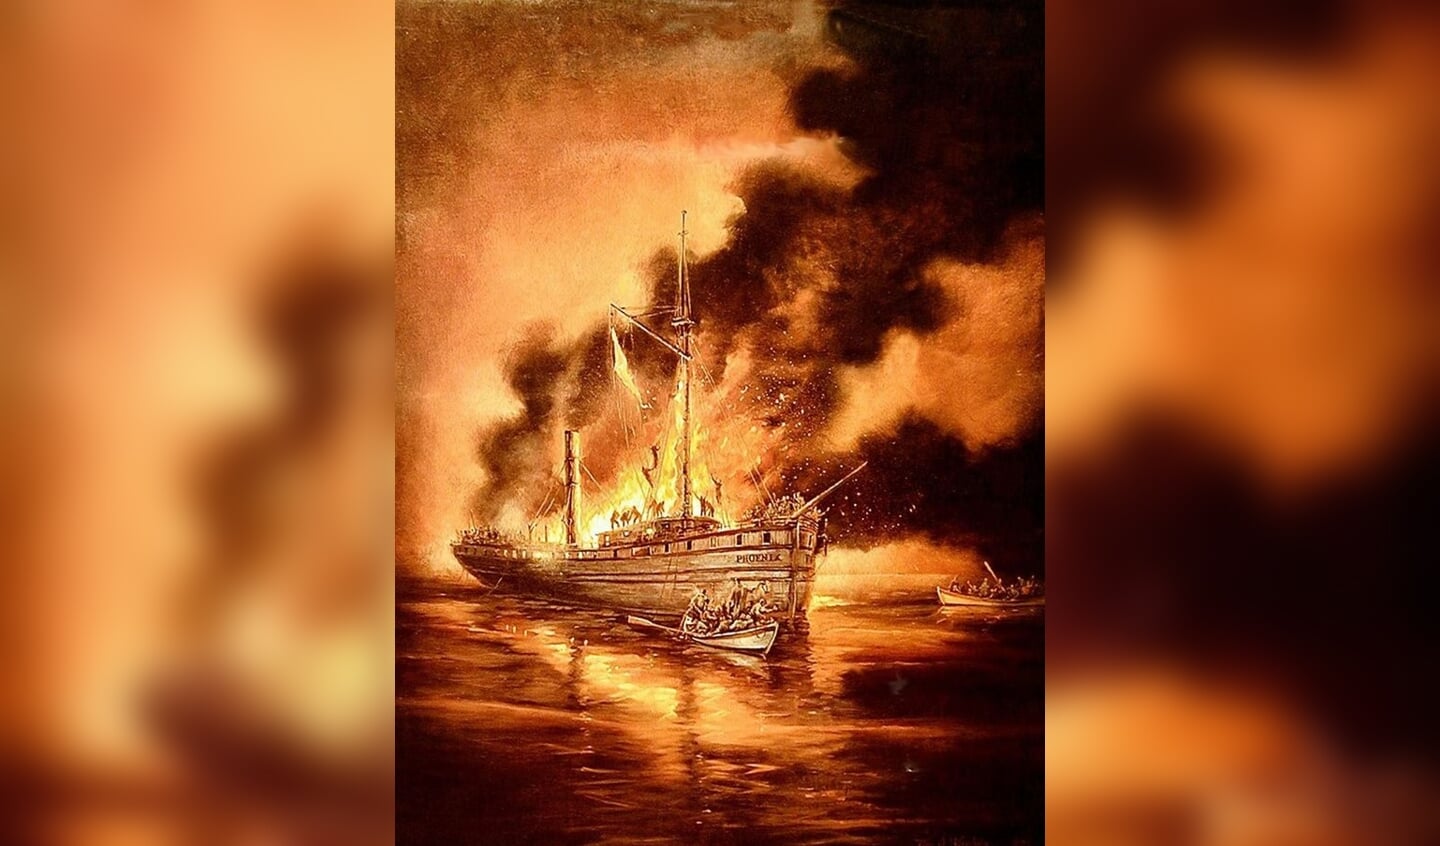 De ramp met de Phoenix, geschilderd door William J. Koelpin. Afbeelding: William J. Koelpin
